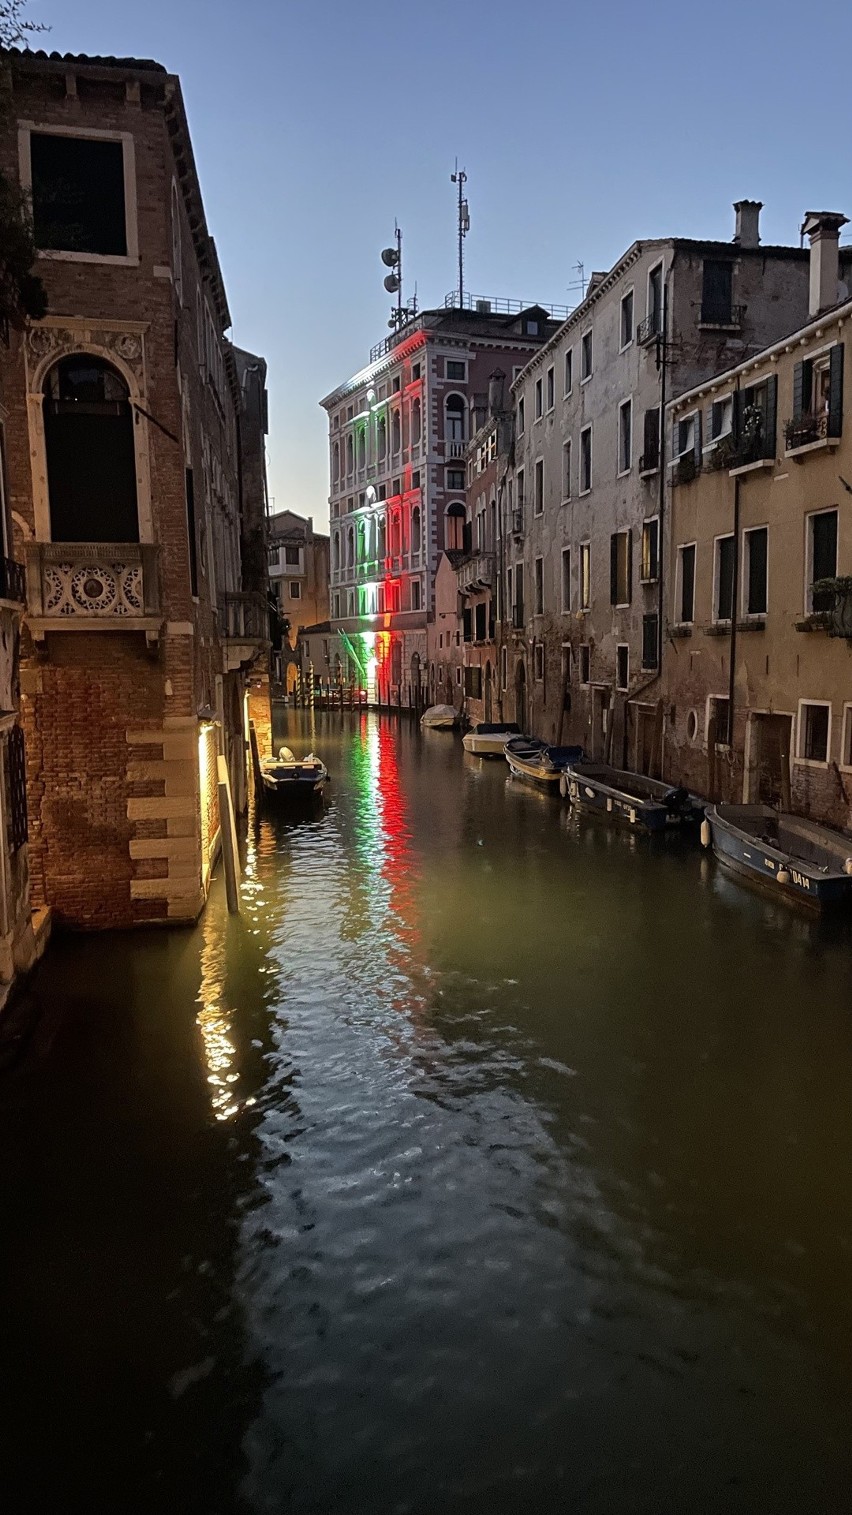 Wenecja zagrożona zniszczeniami przez turystów. Unesco rekomenduje działanie